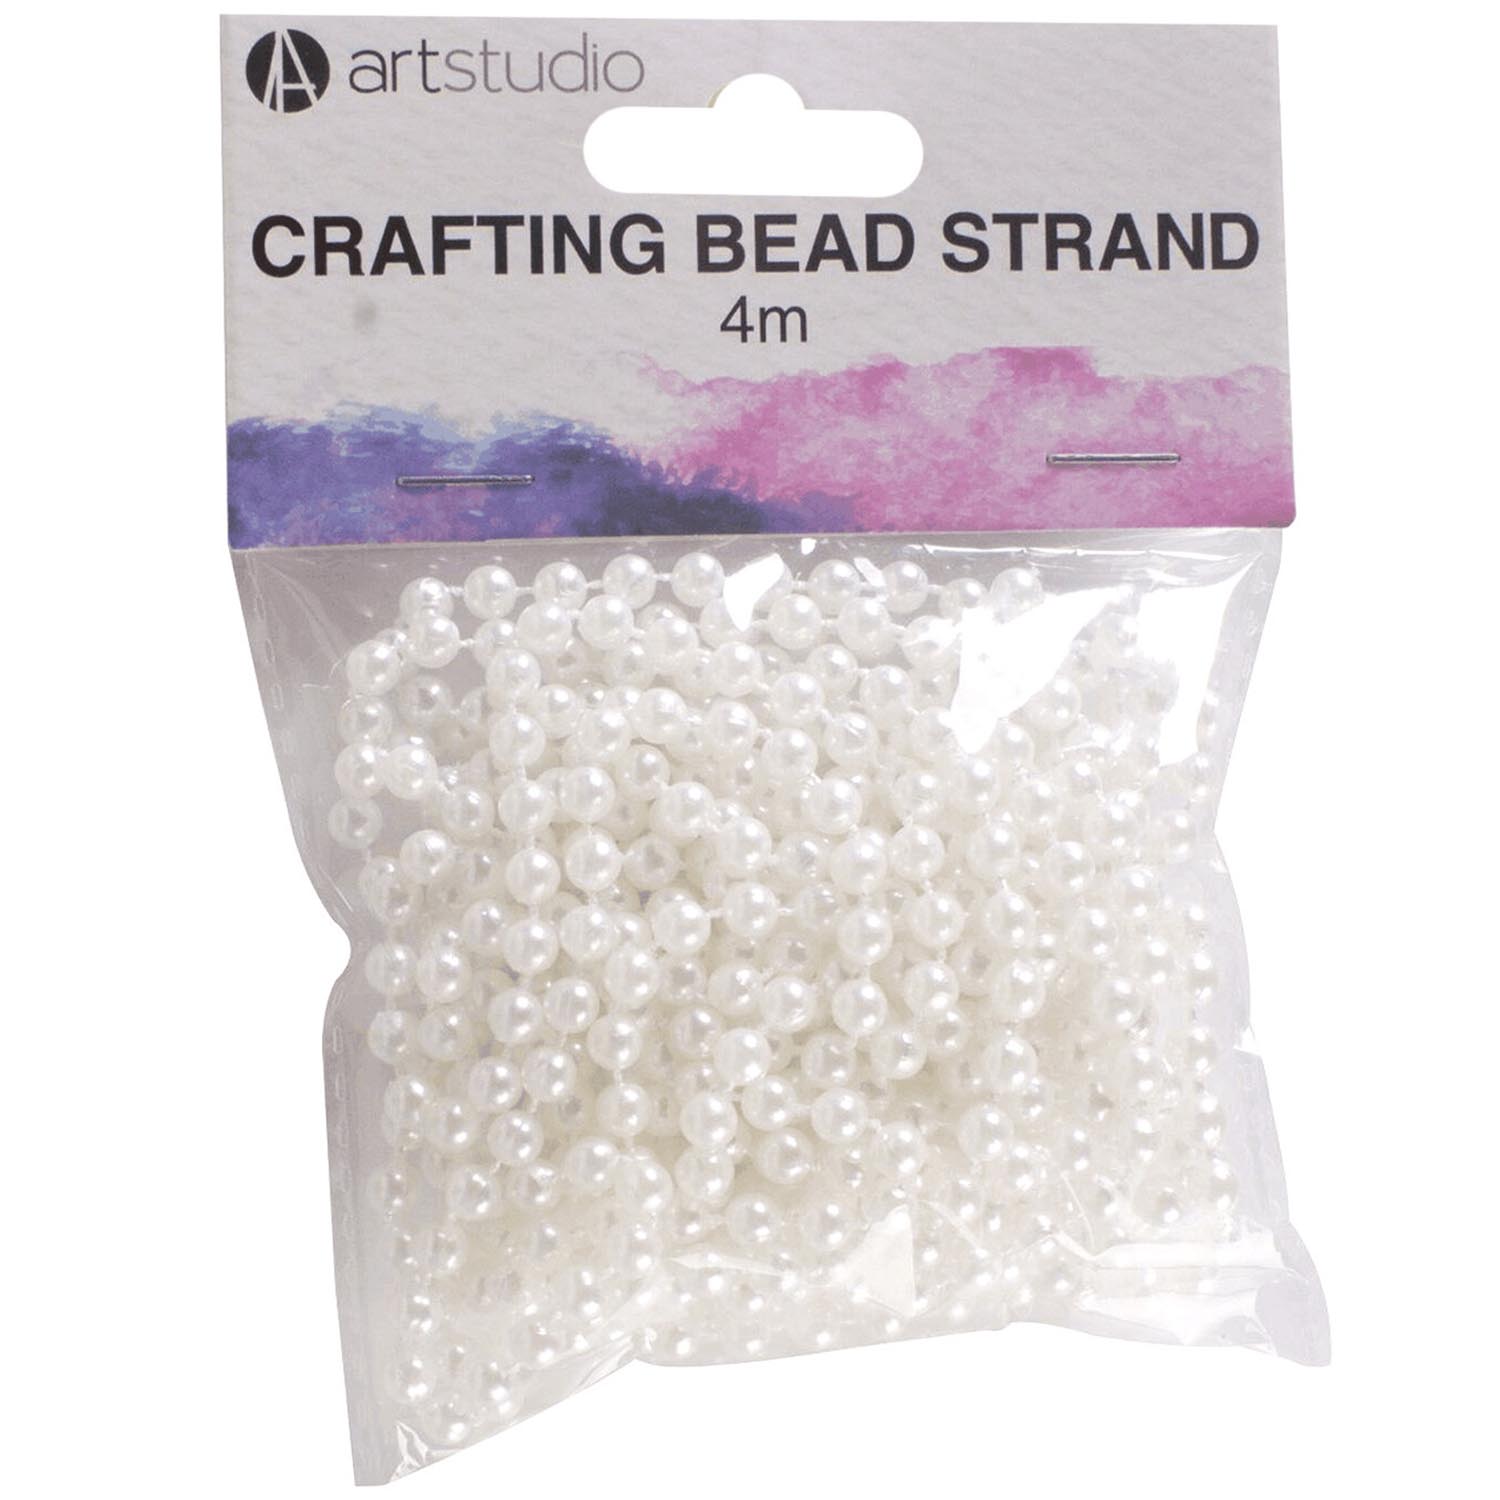 Art Studio Crafting Bead Strand - White Image